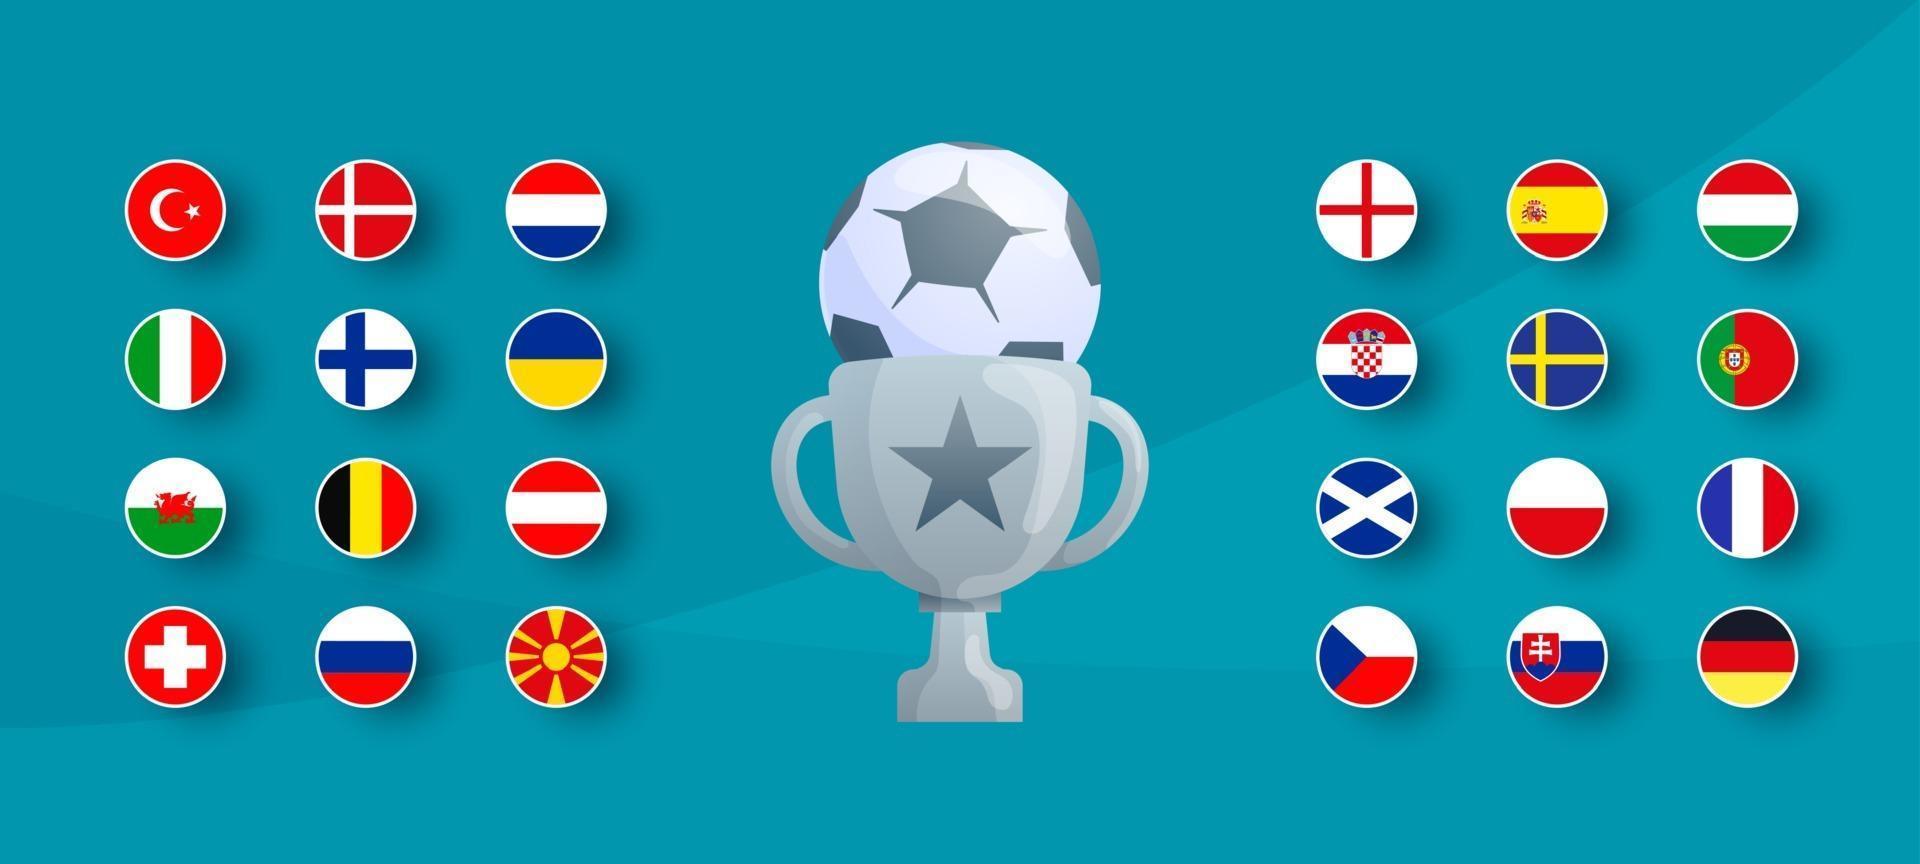 Europees voetbaltoernooi 2020-vlag is ingesteld. vector land vlag ingesteld voor voetbalkampioenschap.